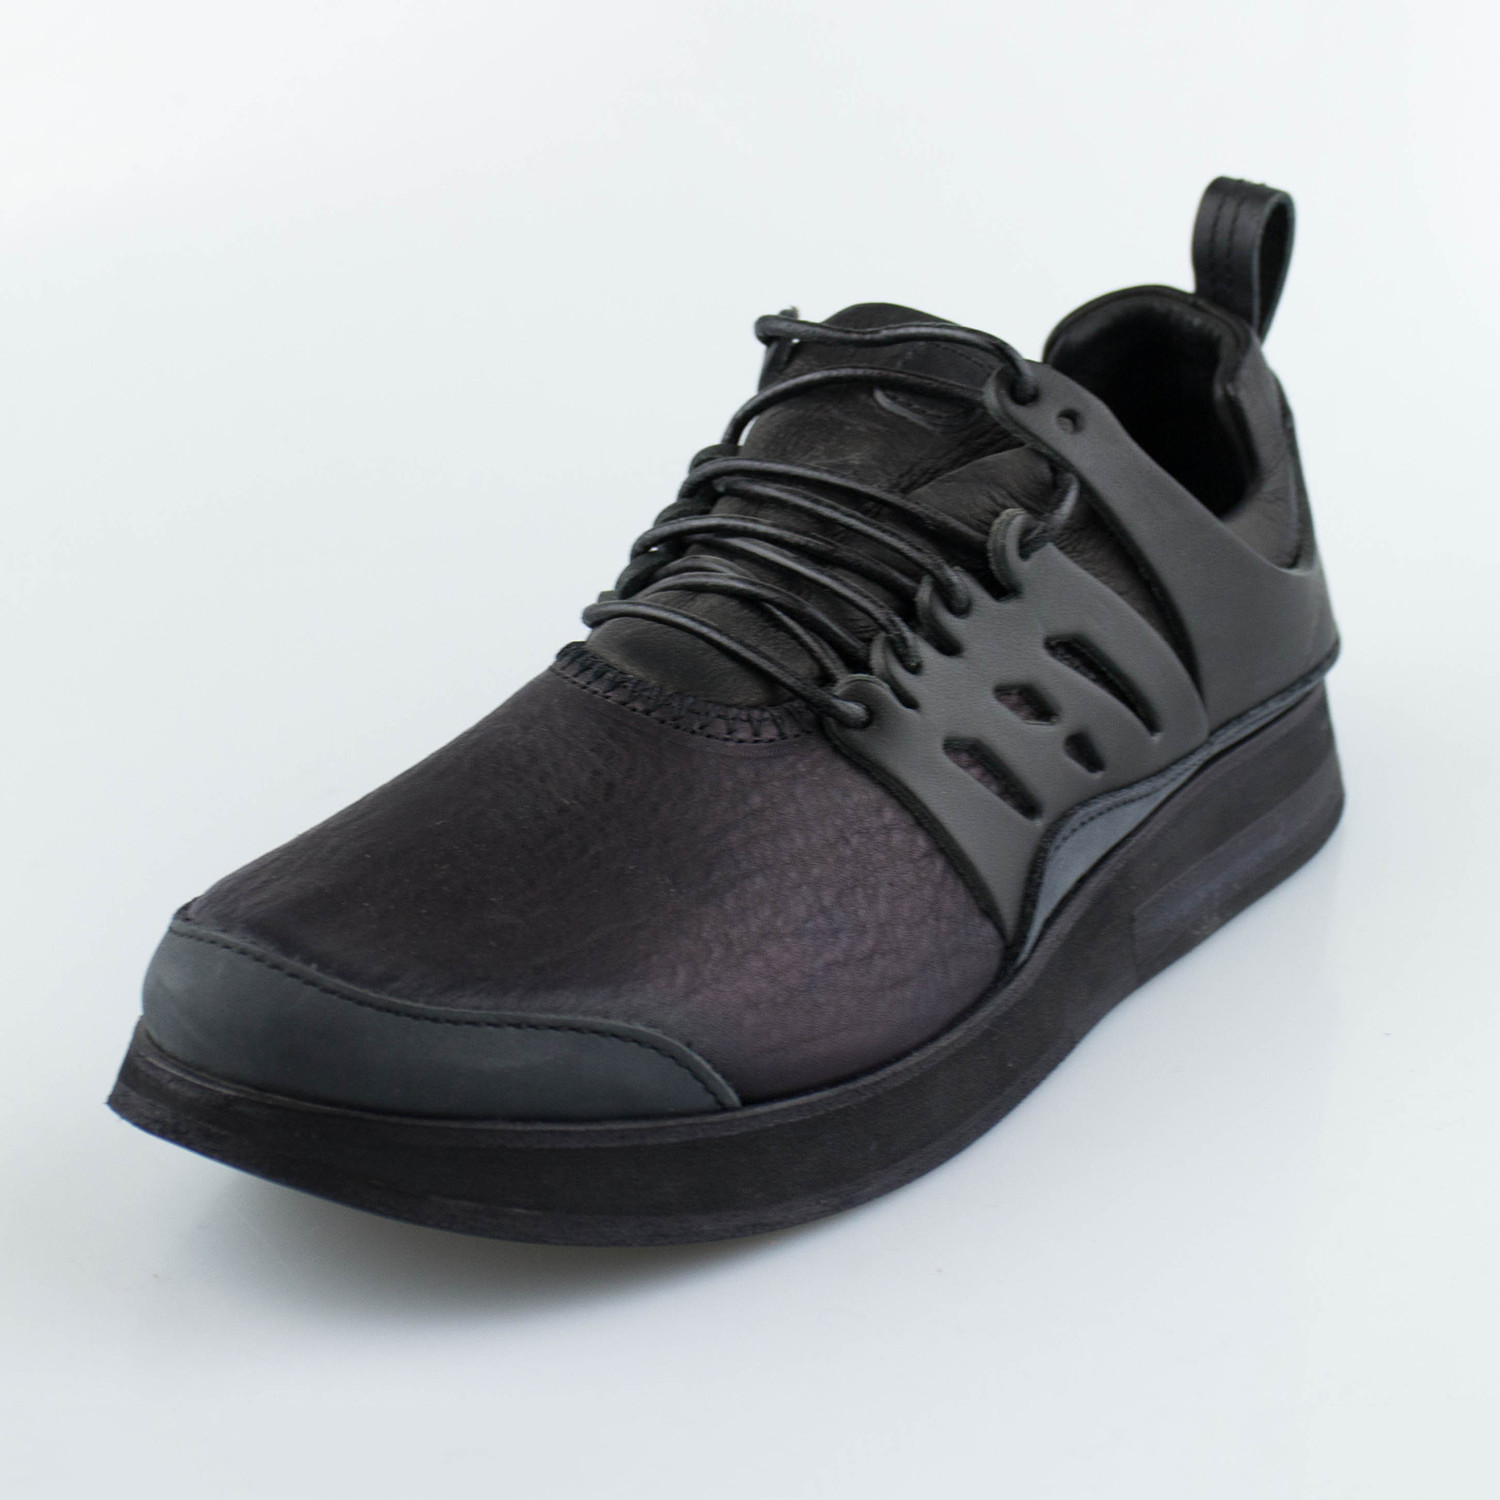 Hender Scheme // MIP-12 Nike Air Presto Inspired Sneakers // Black 